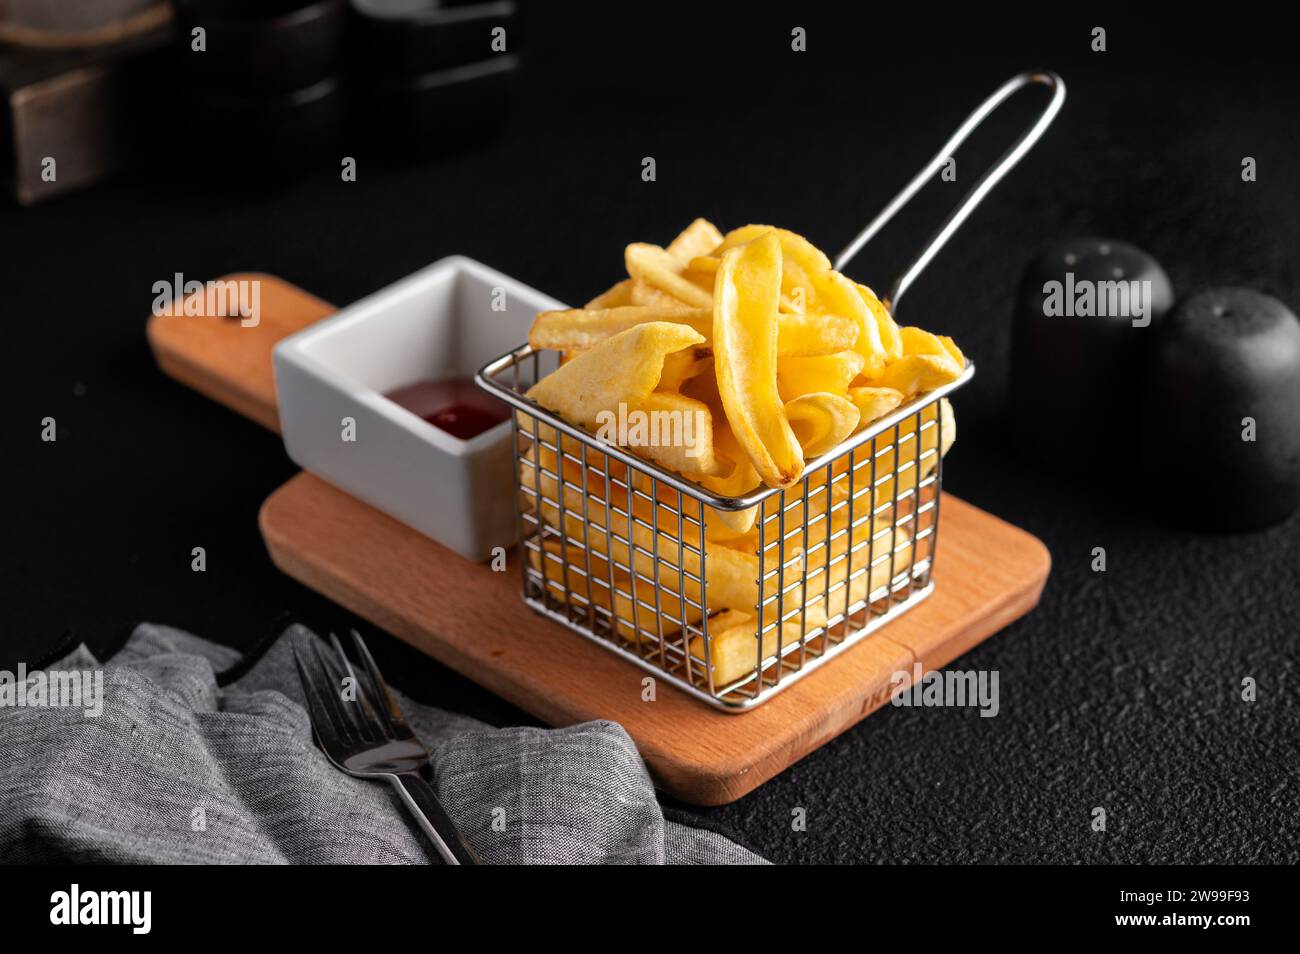 Eine herrliche Portion Pommes frites, die in einem Korb auf einem rustikalen Holzschneidebrett präsentiert werden. Stockfoto